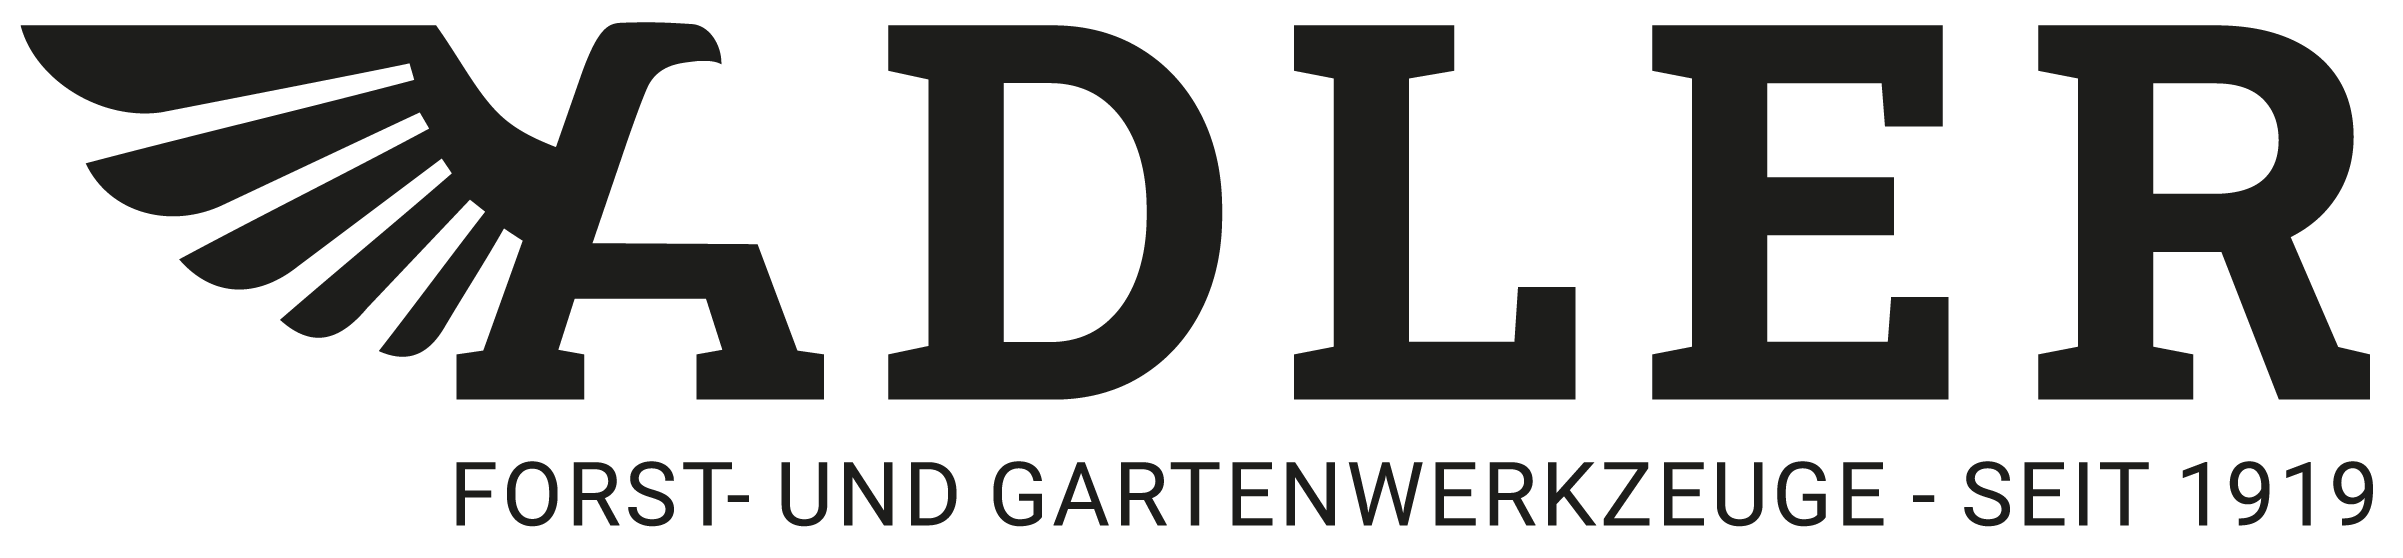 Adler Logo Complete Black Transparent